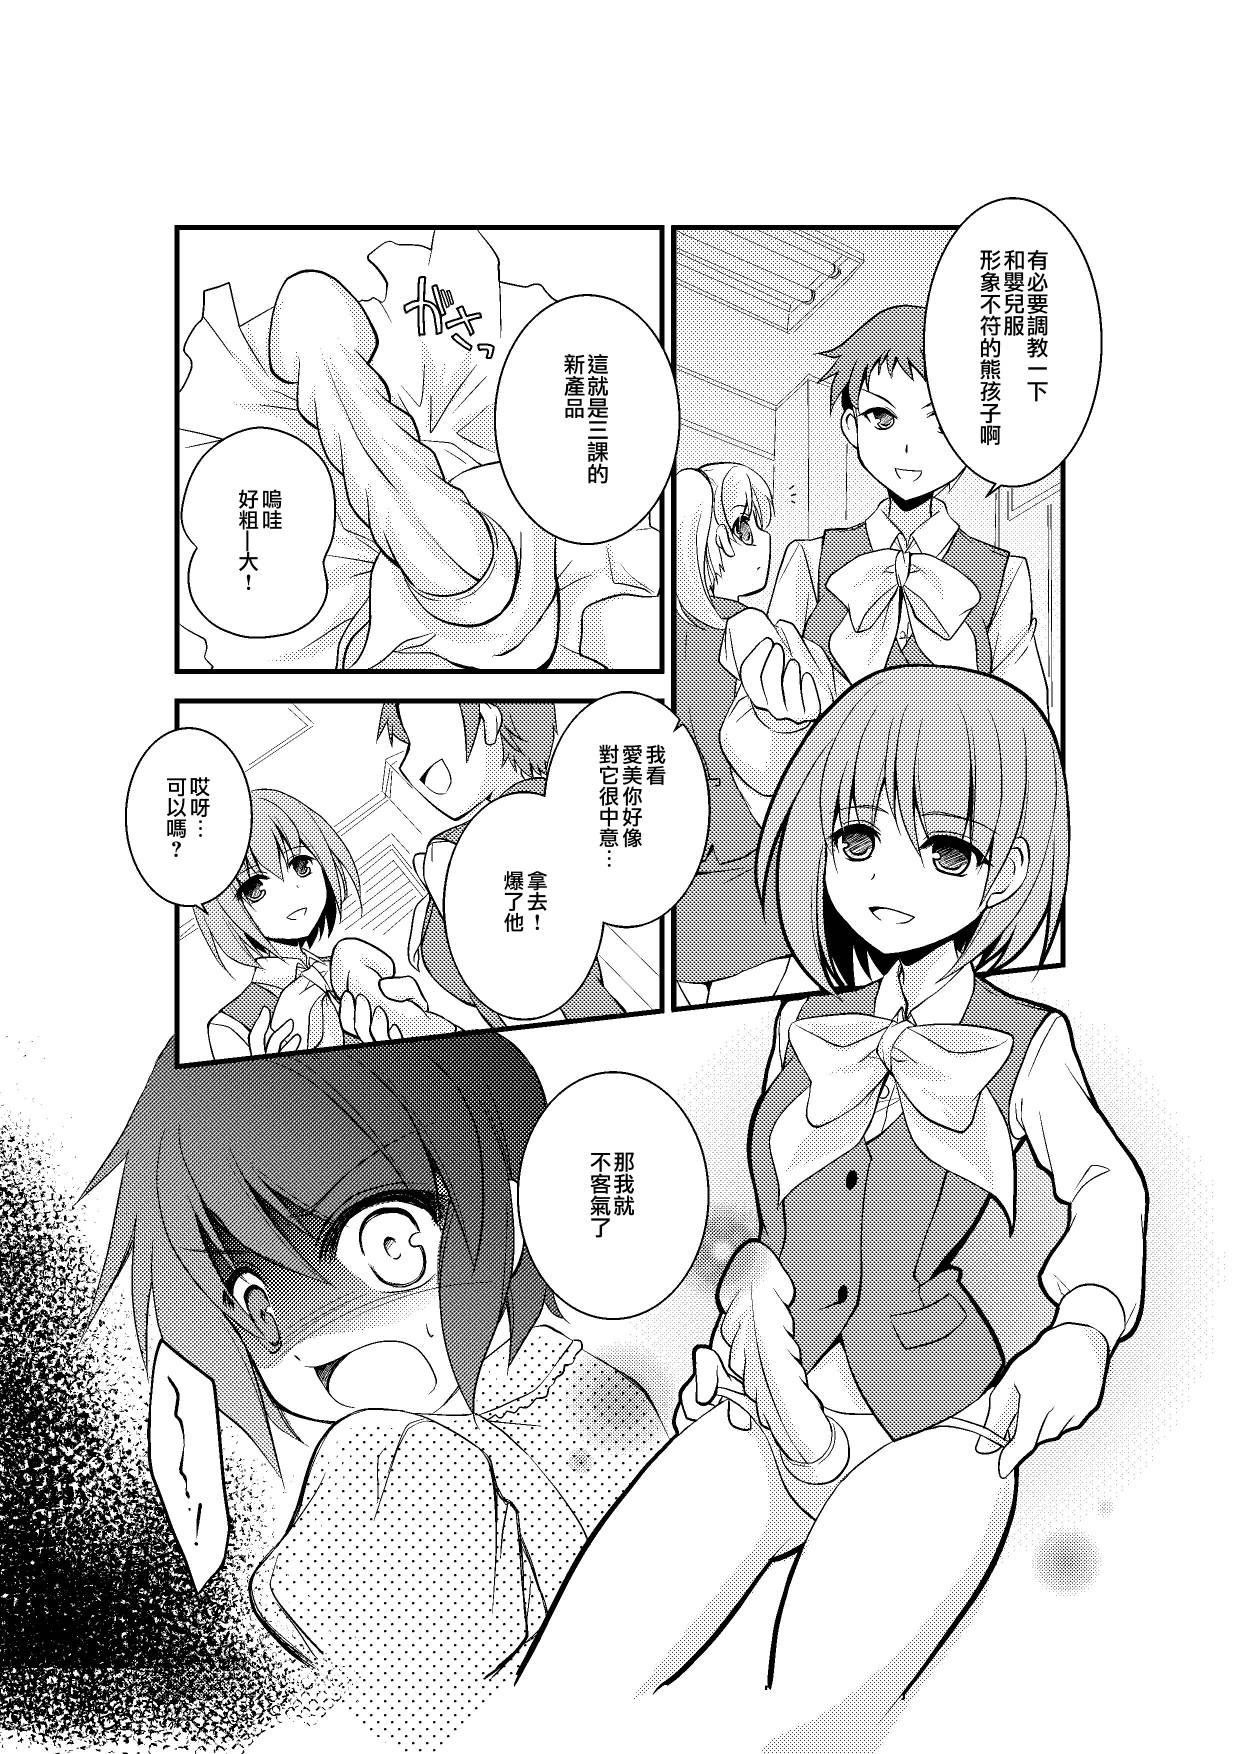 Toilet 4-ka no Shoujo Model Girl Sucking Dick - Page 10